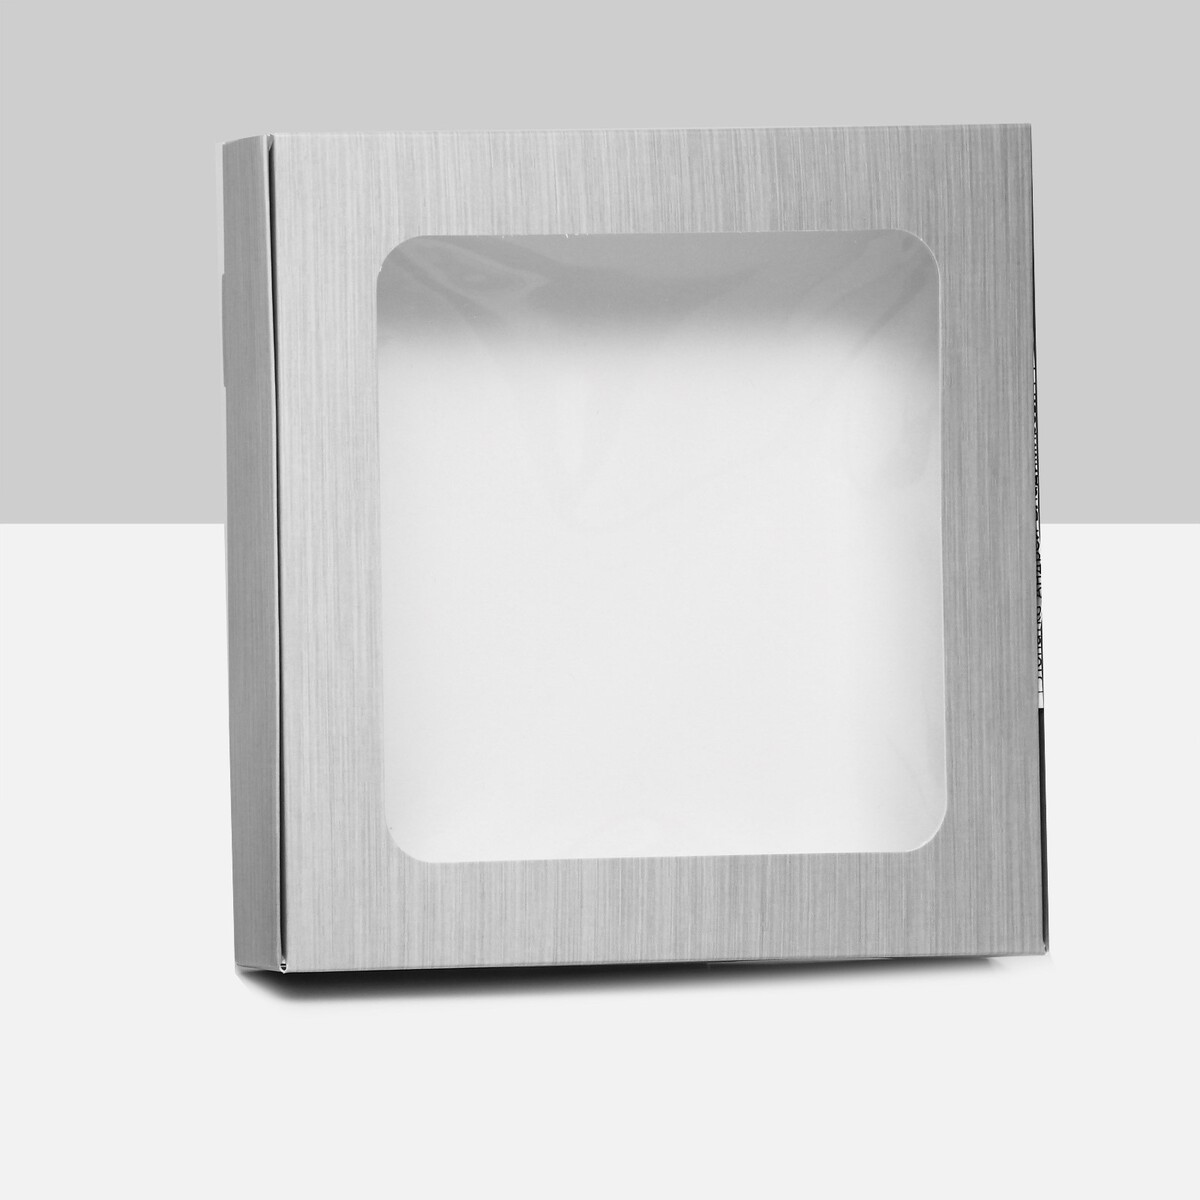 Коробка самосборная, с окном, серебрянная, 16 х 16 х 3 см коробка самосборная с окном сиреневая 13 х 13 х 3 см